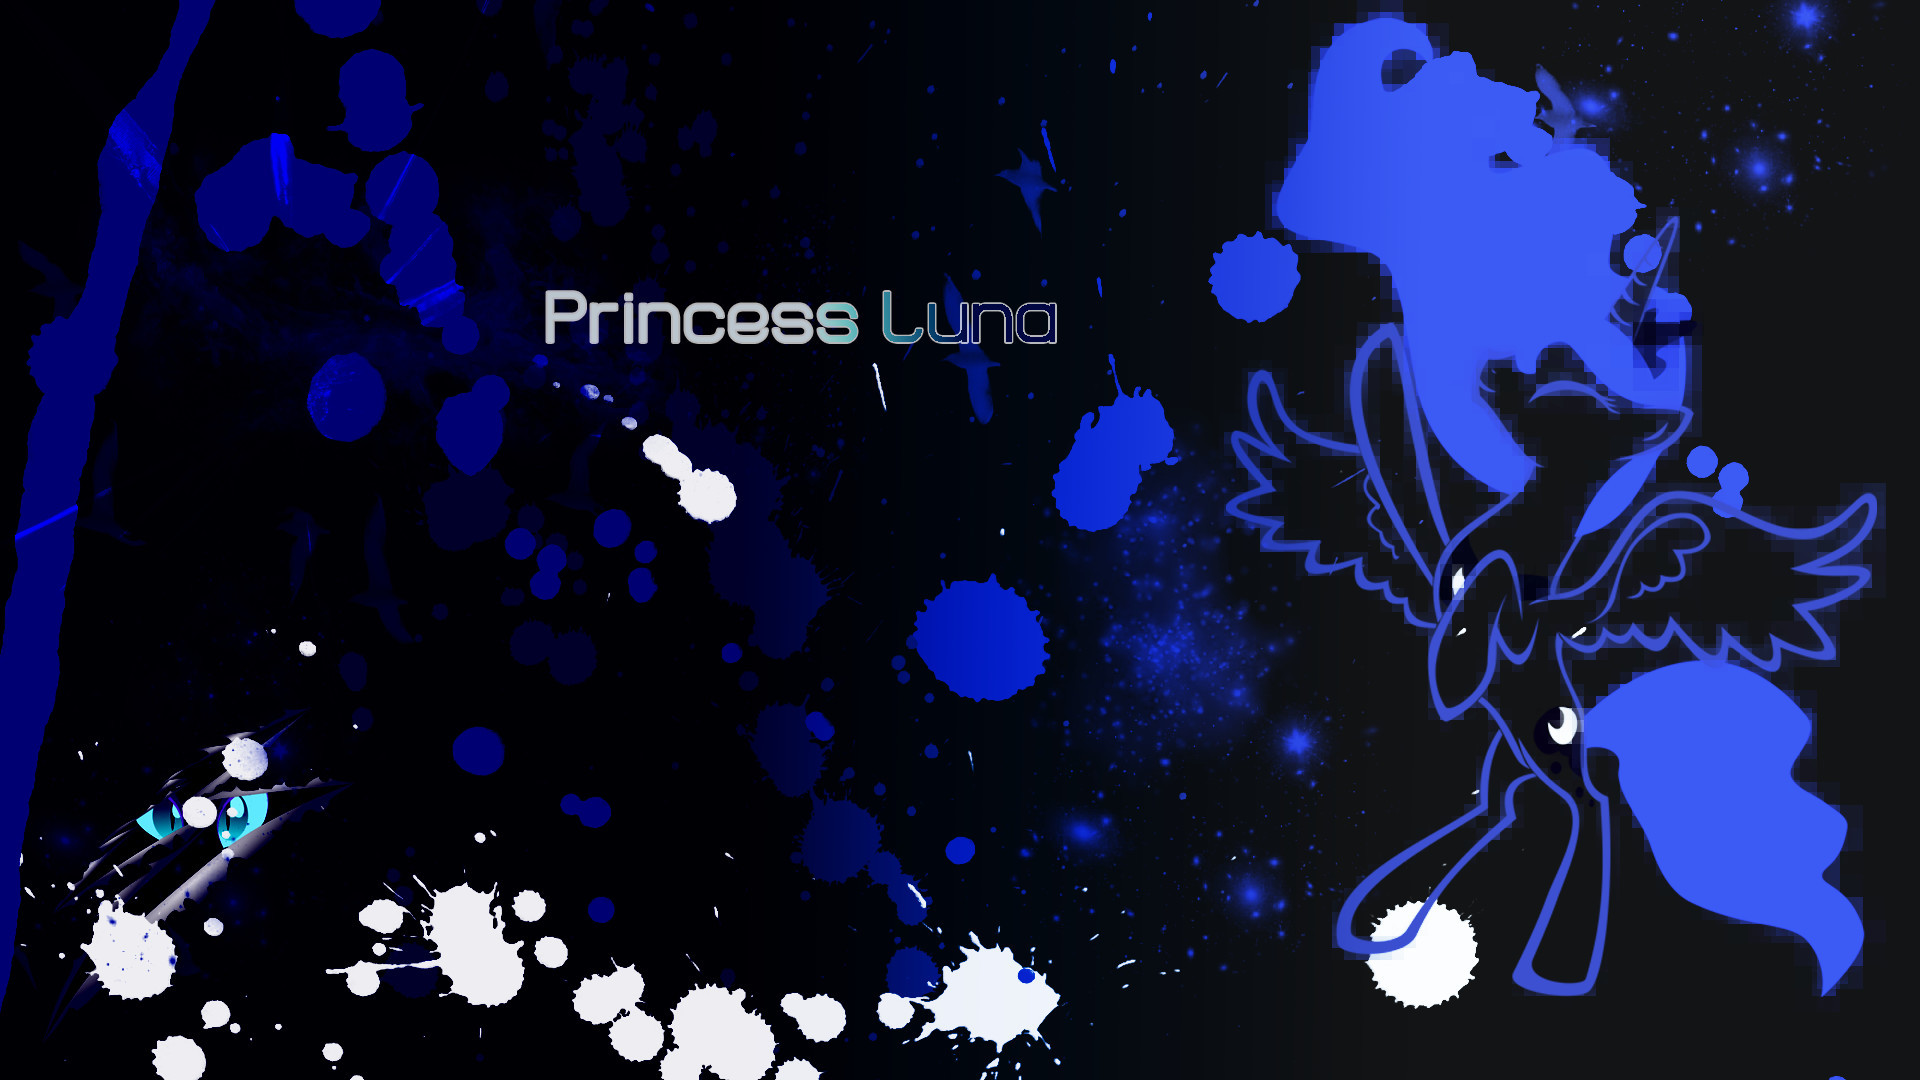 1920x1080  Princess Luna Wallpaper  px by Pcyzicus Princess Luna  Wallpaper  px by Pcyzicus